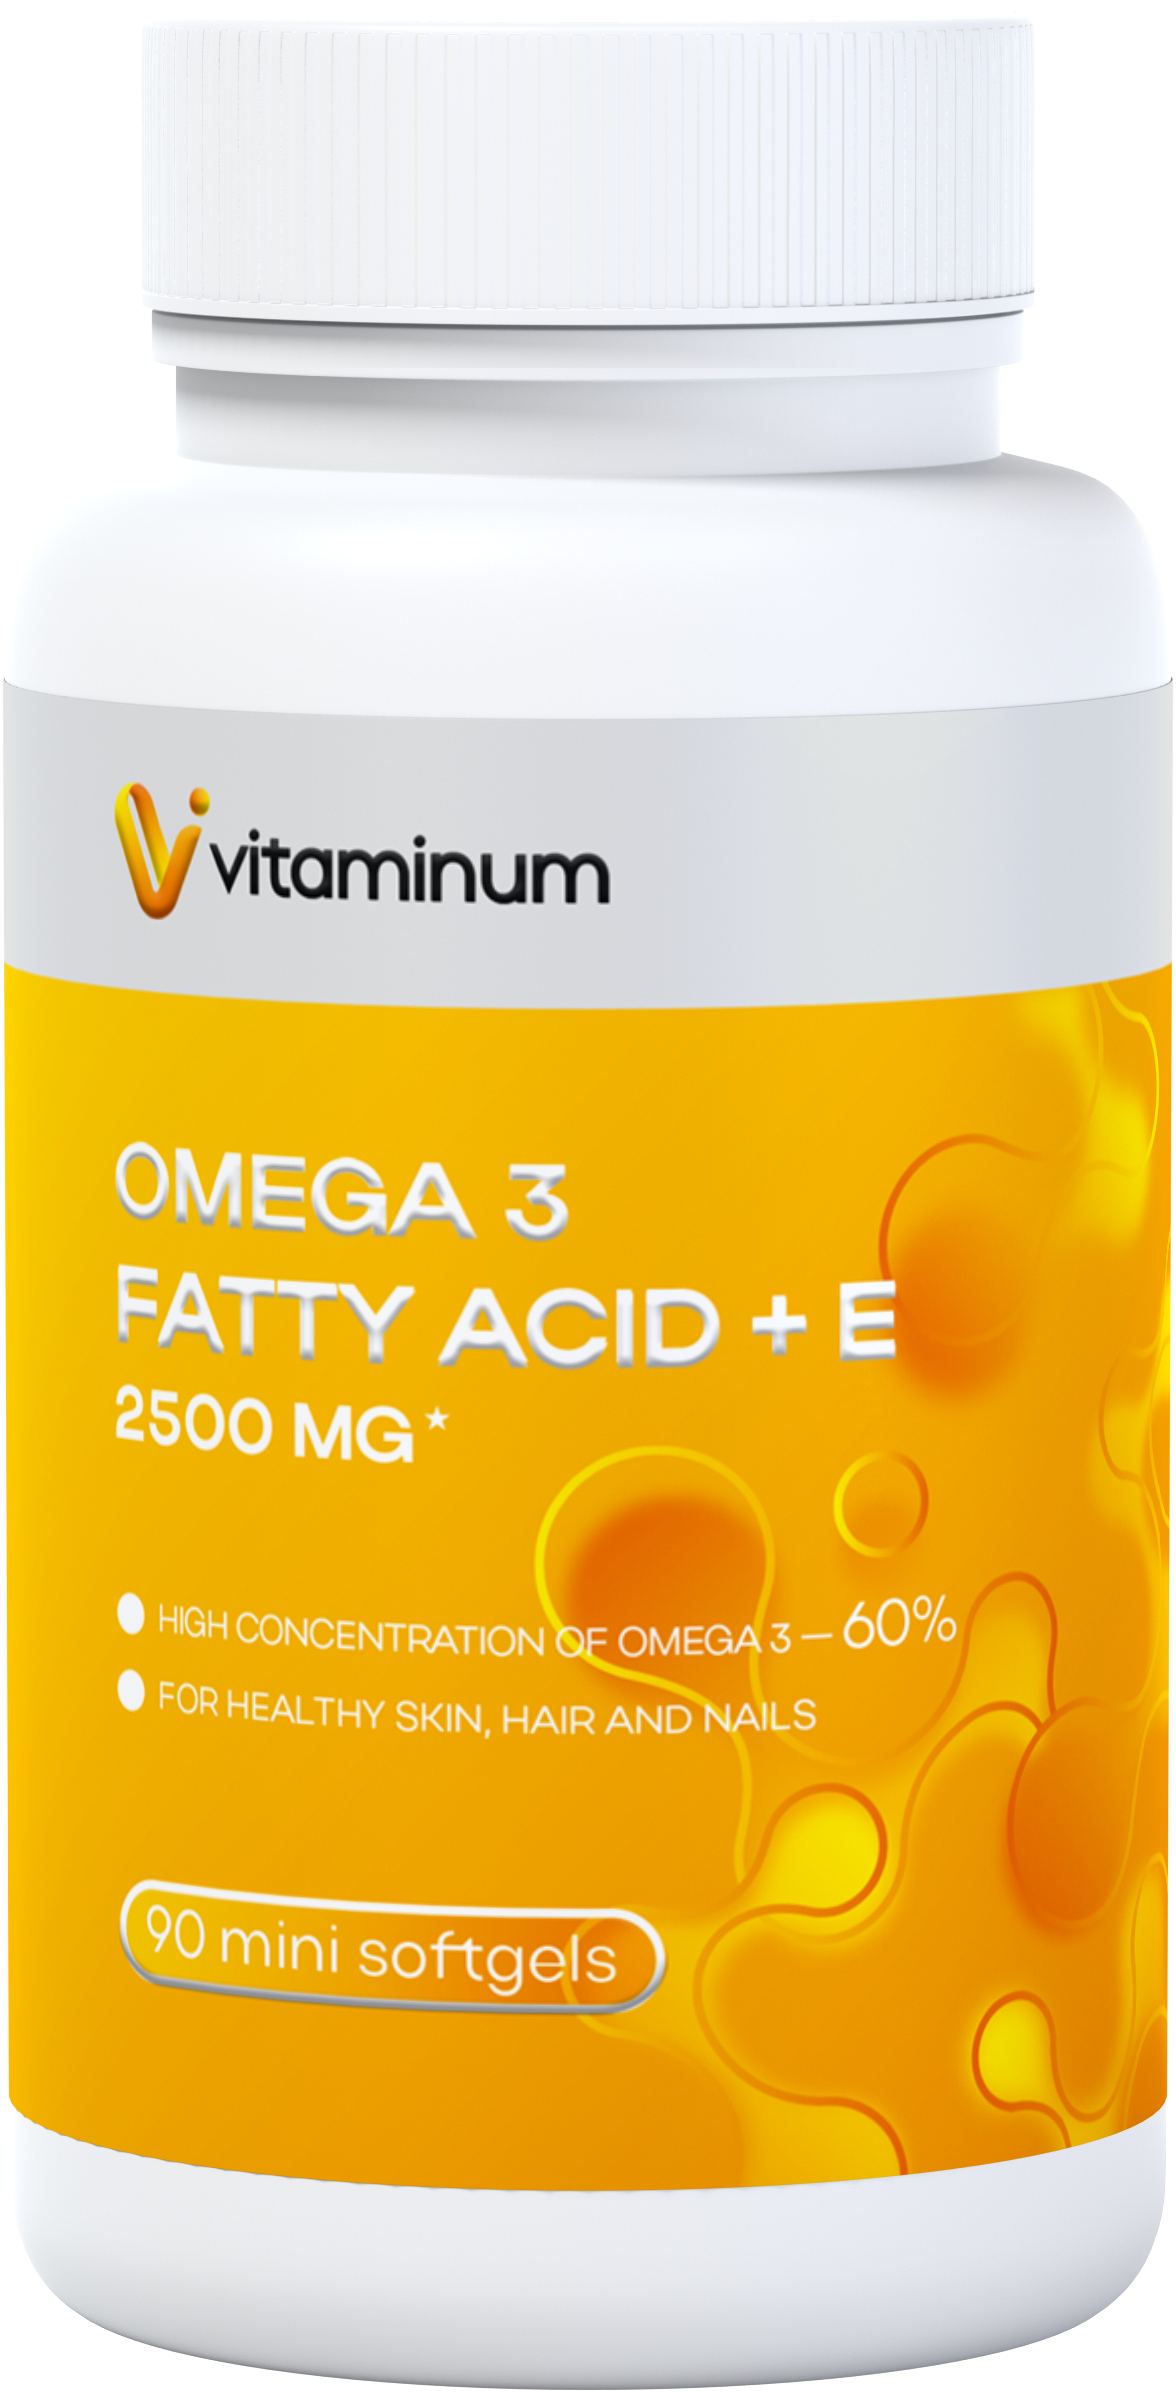  Vitaminum ОМЕГА 3 60% + витамин Е (2500 MG*) 90 капсул 700 мг   в Камышине